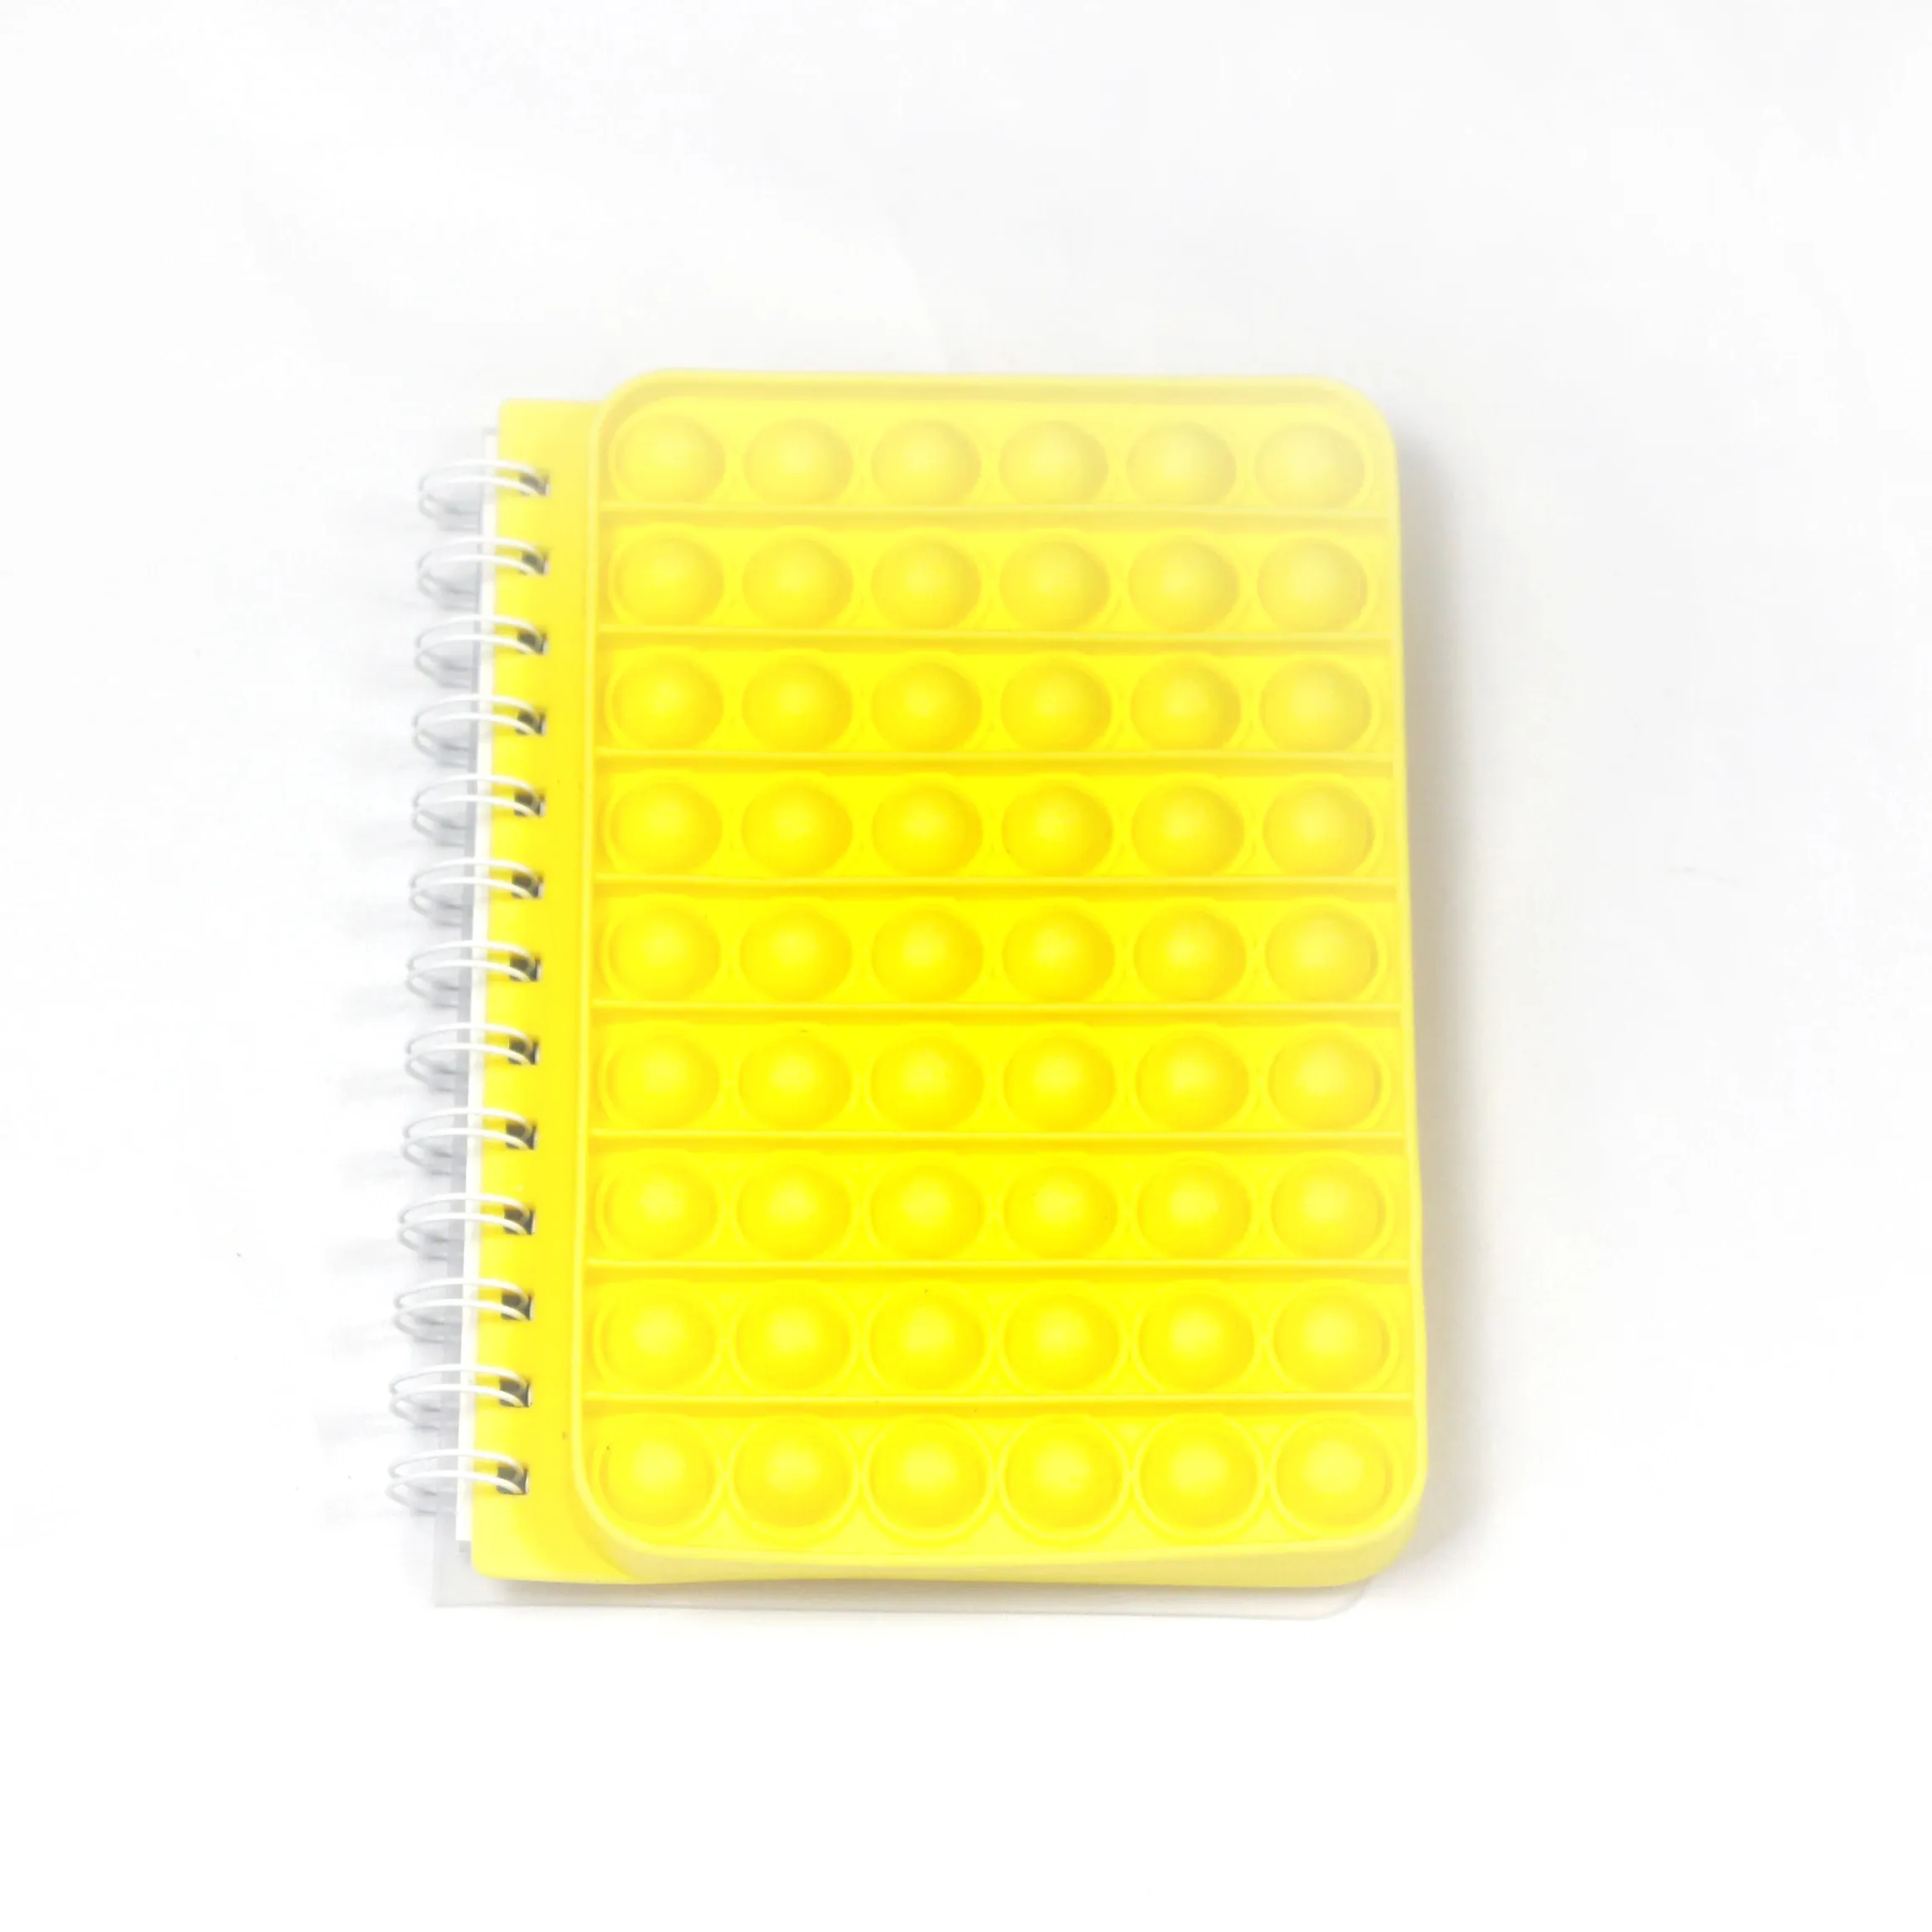 Soododo Notebook koil dekompresi kuning XDB-0039 untuk alat tulis sekolah dan kantor